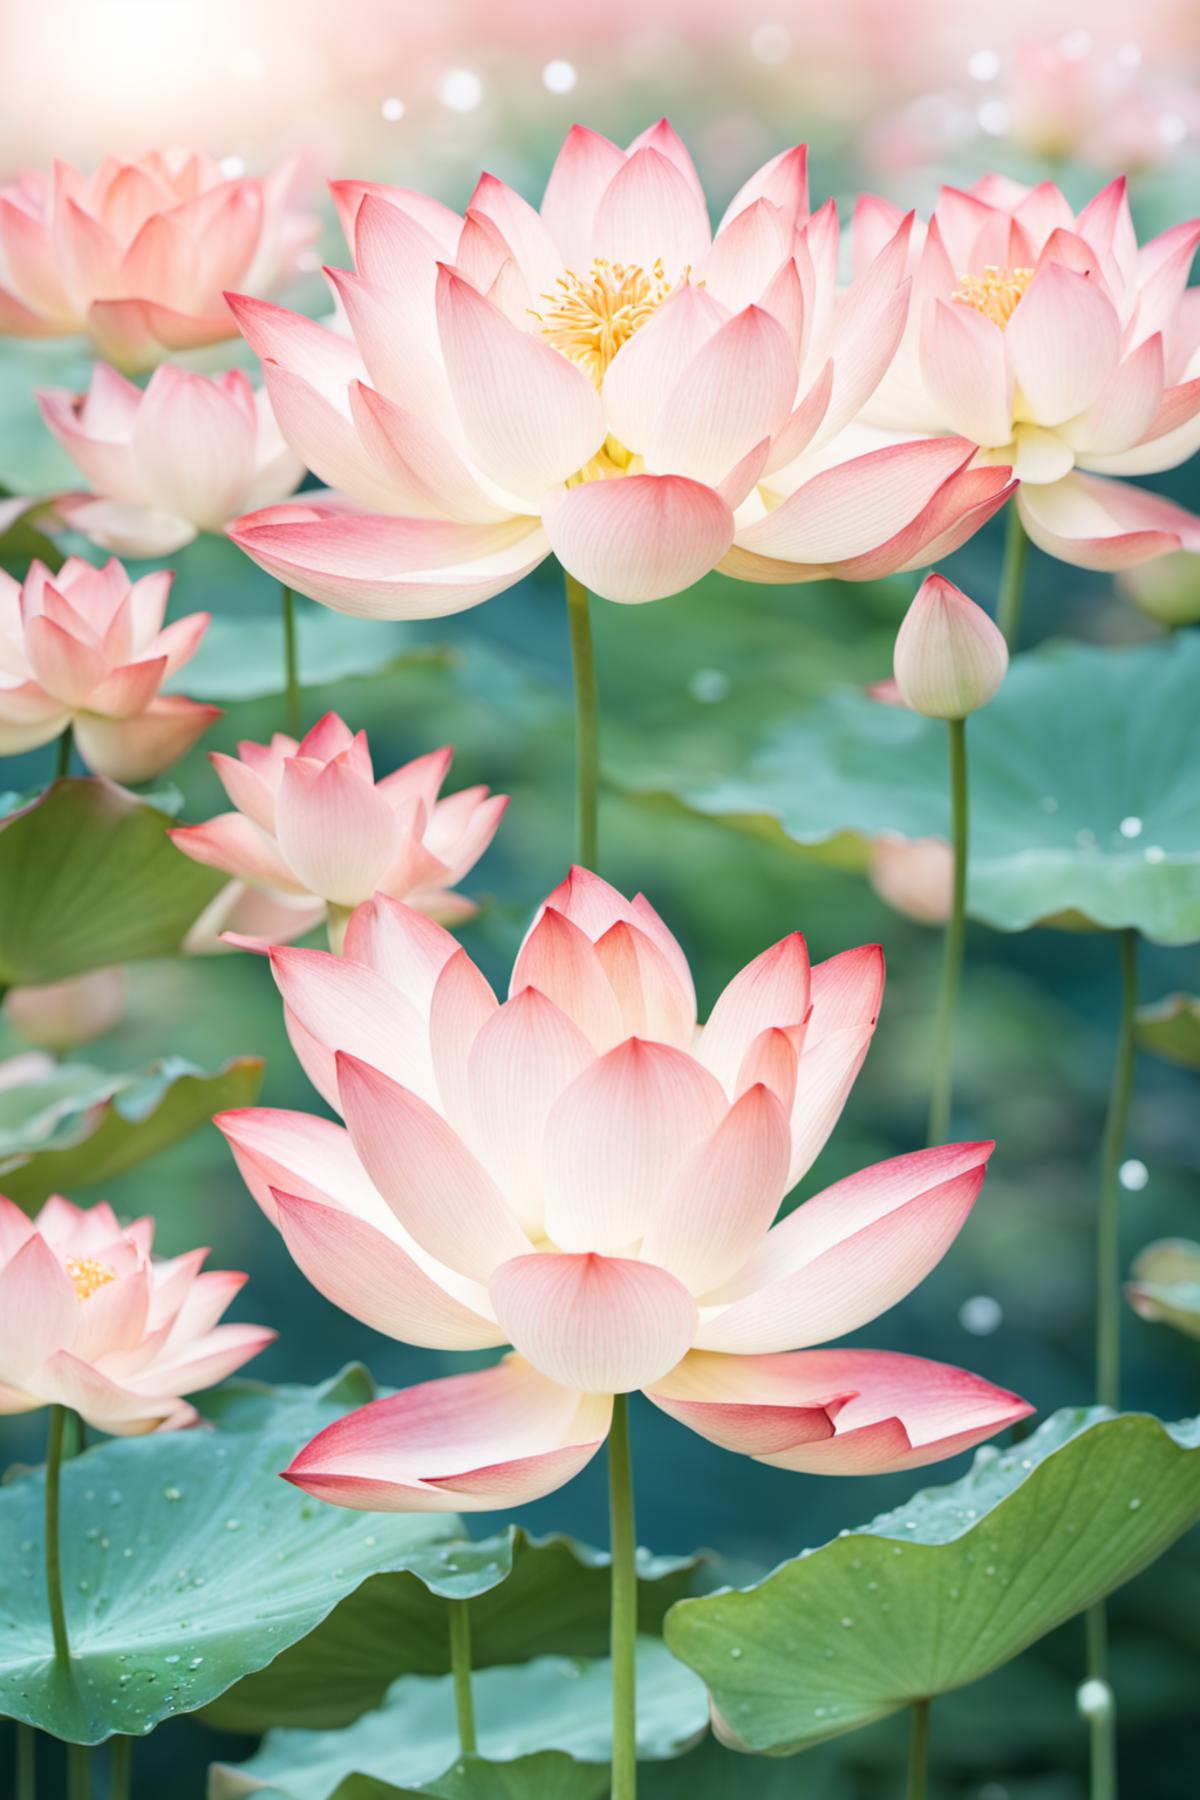 lotus flower image by wuwuming_Hansen